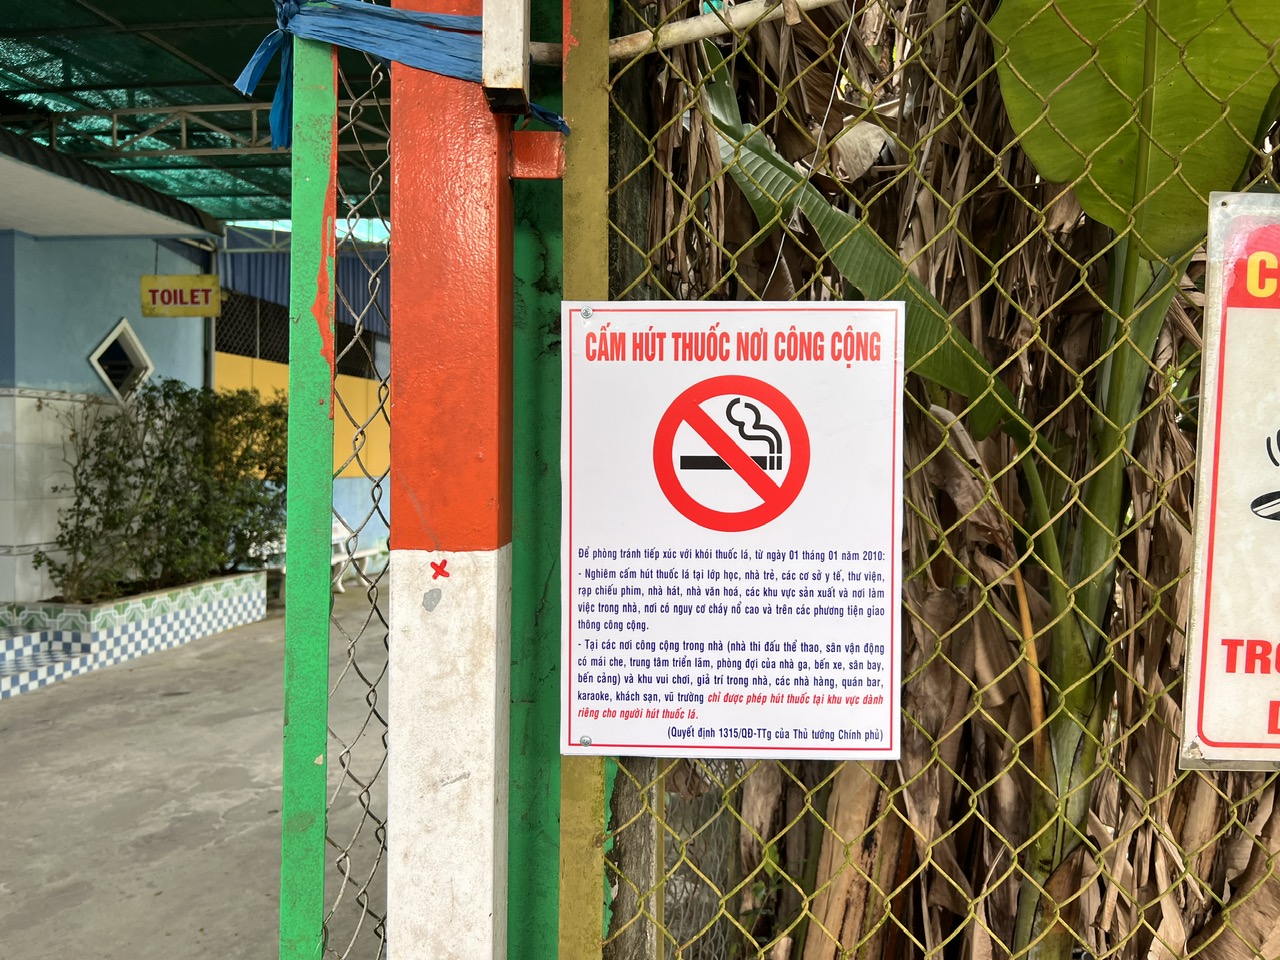 Những nơi cấm hút thuốc lá trong nhà nhưng được phép có chỗ dành riêng cho người hút - Ảnh 2.